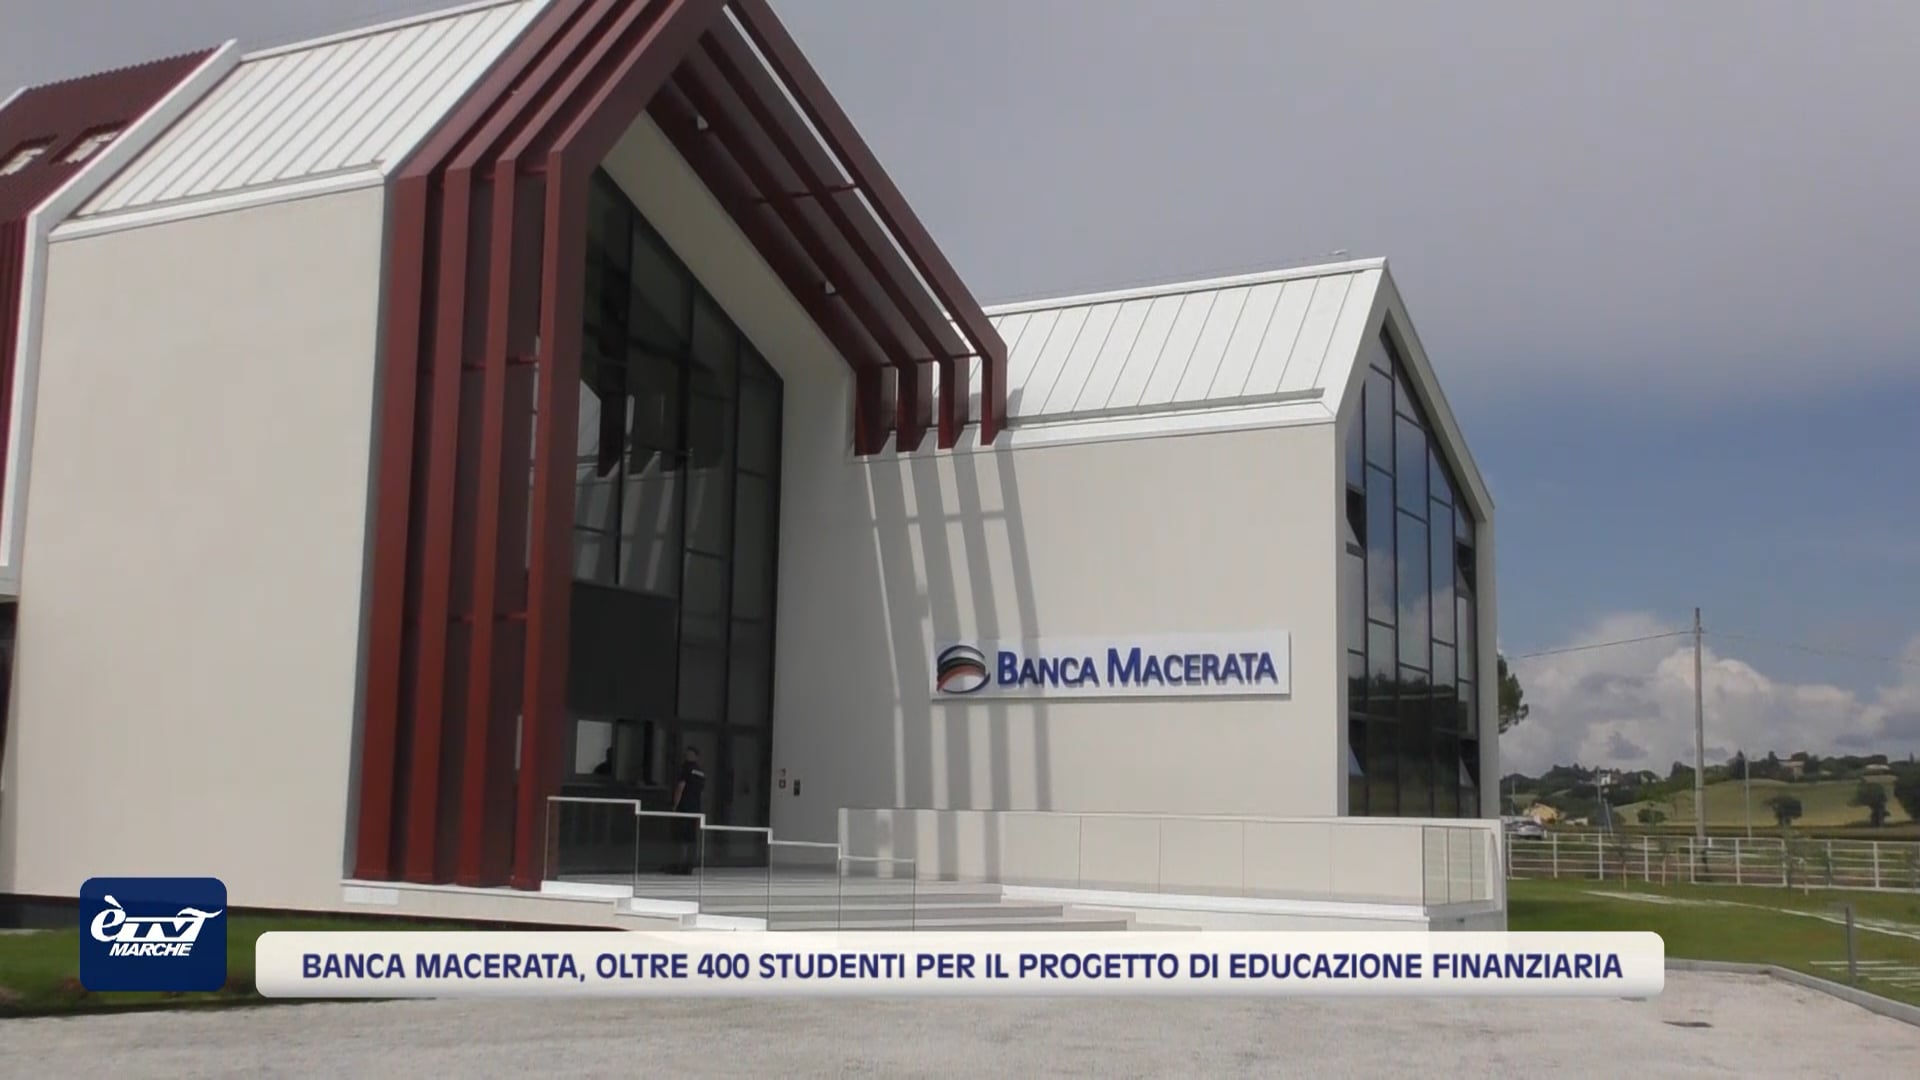 Banca Macerata, oltre 400 studenti per il progetto di Educazione Finanziaria - VIDEO